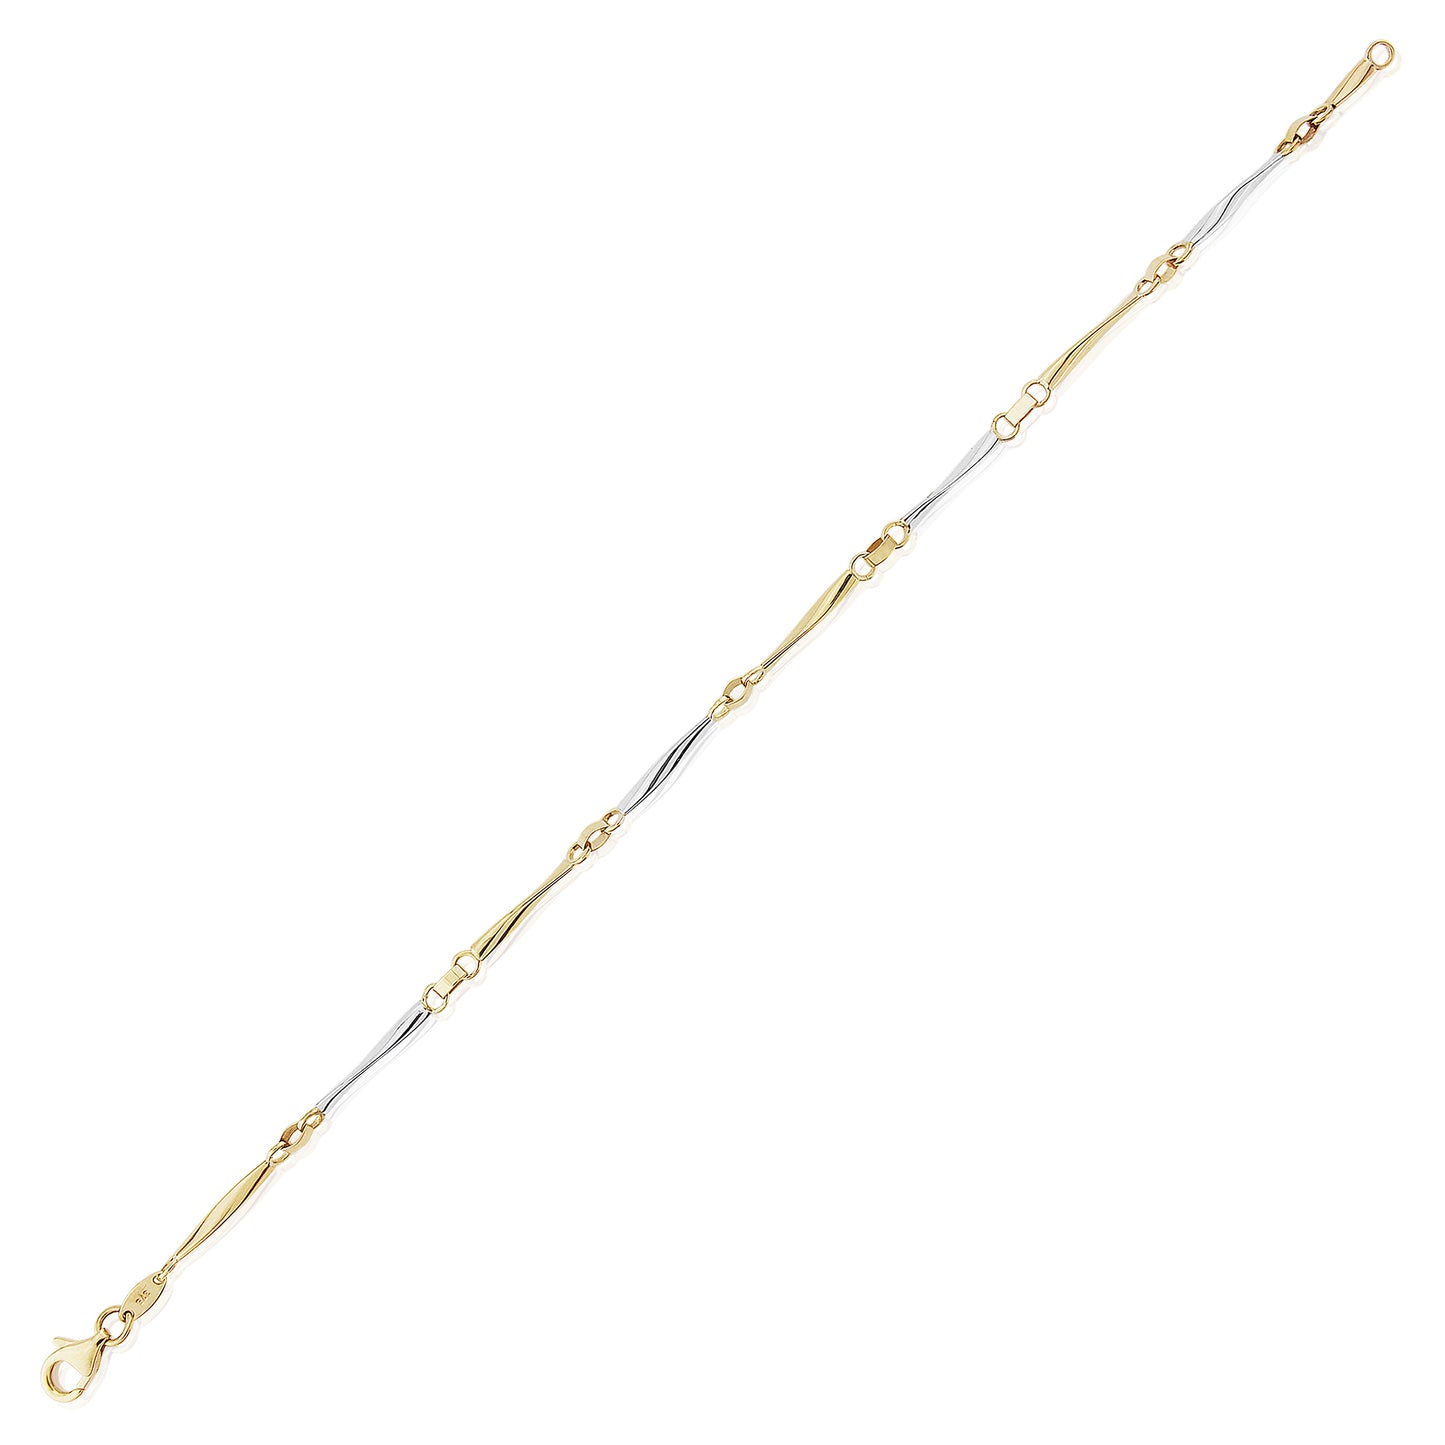 9ct 2-Colour Gold  Twist Ribbon Links Bracelet 7.25" - CNNR02992